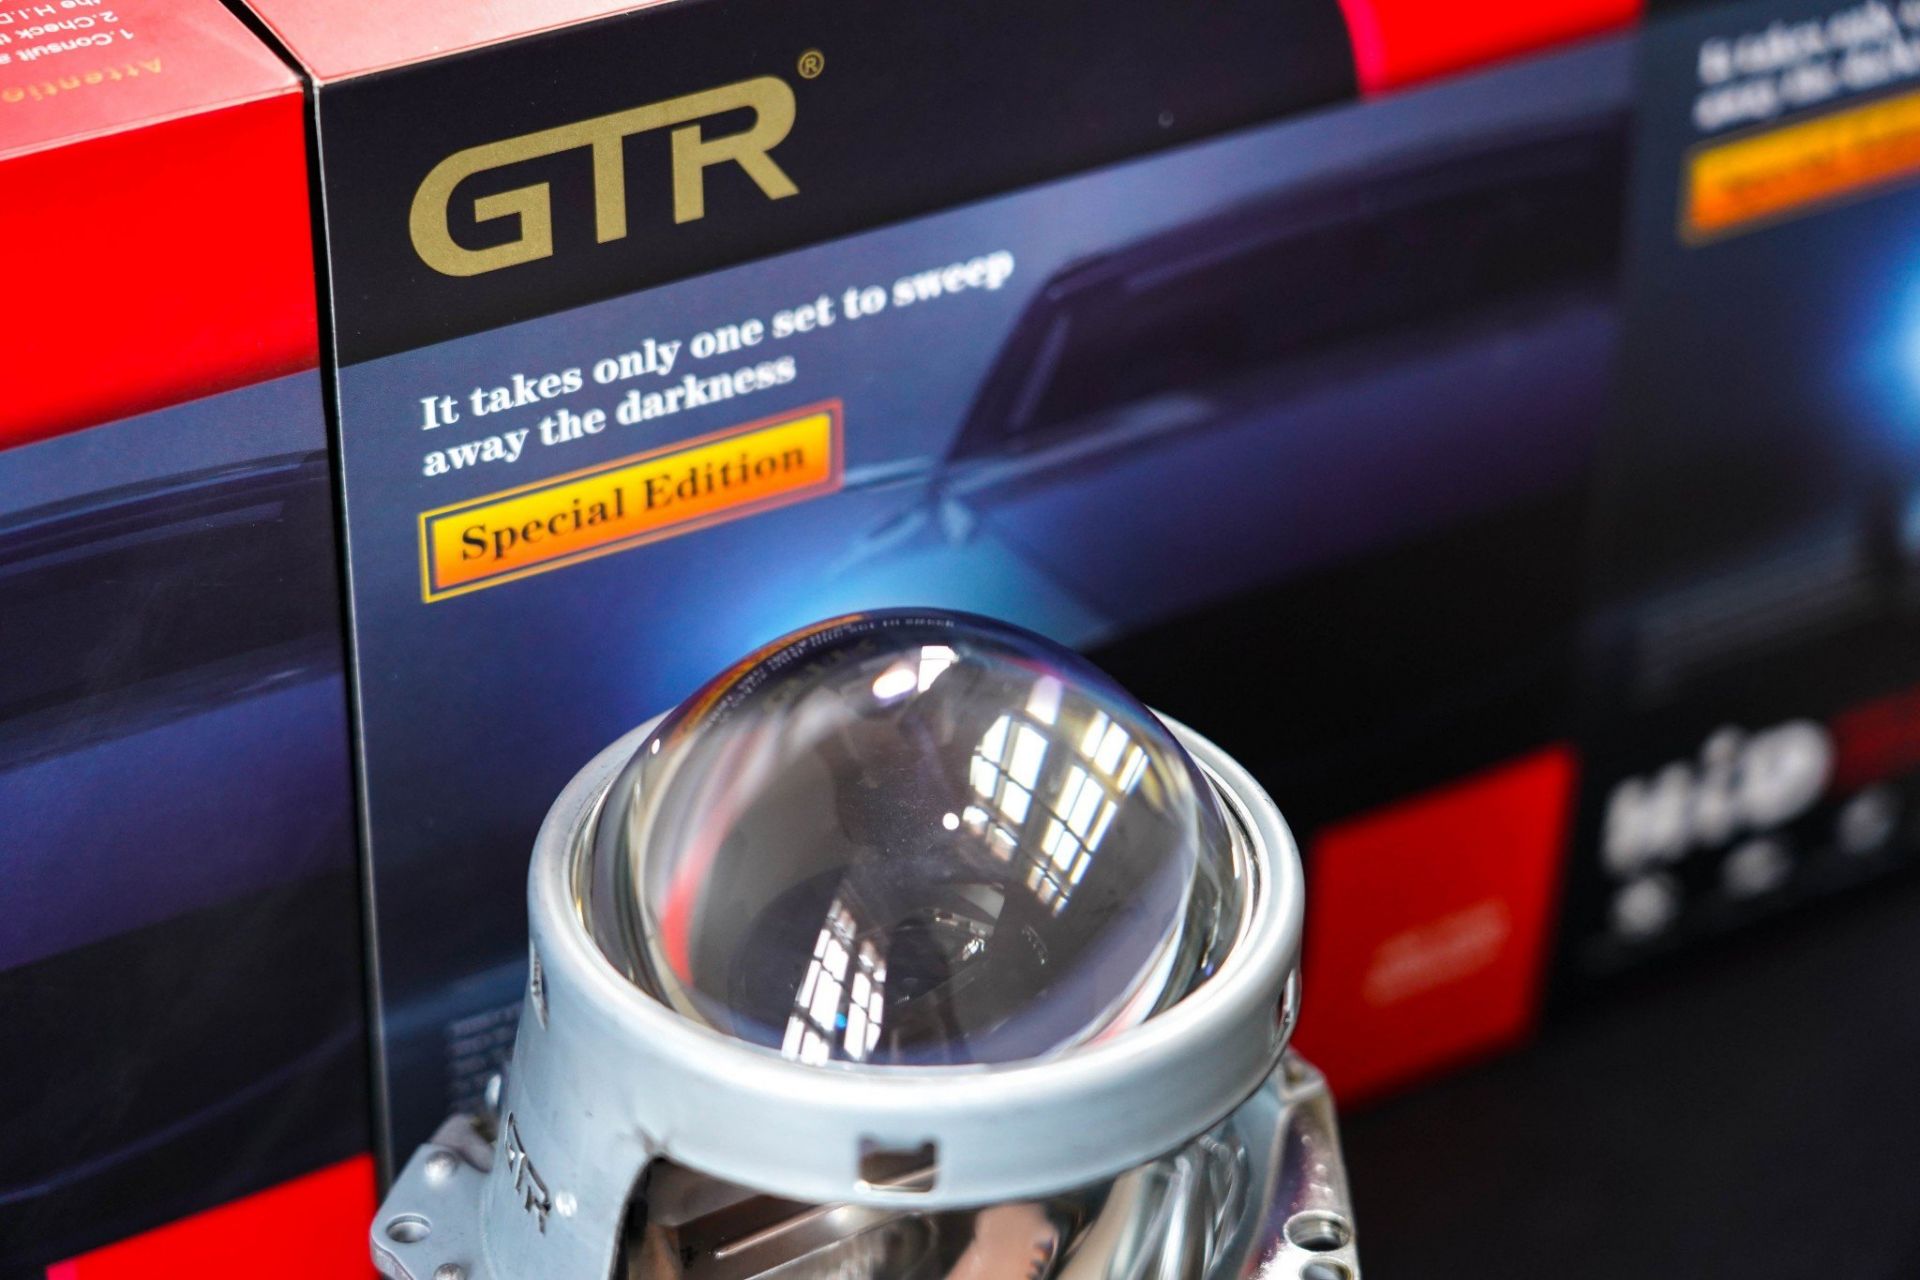 Nhà sản xuất danh tiếng GTR ra mắt dòng siêu phẩm Kit Xenon & Ballast GTR tăng sáng 150 Plus Special Edition (se) cho thị trường Việt Nam